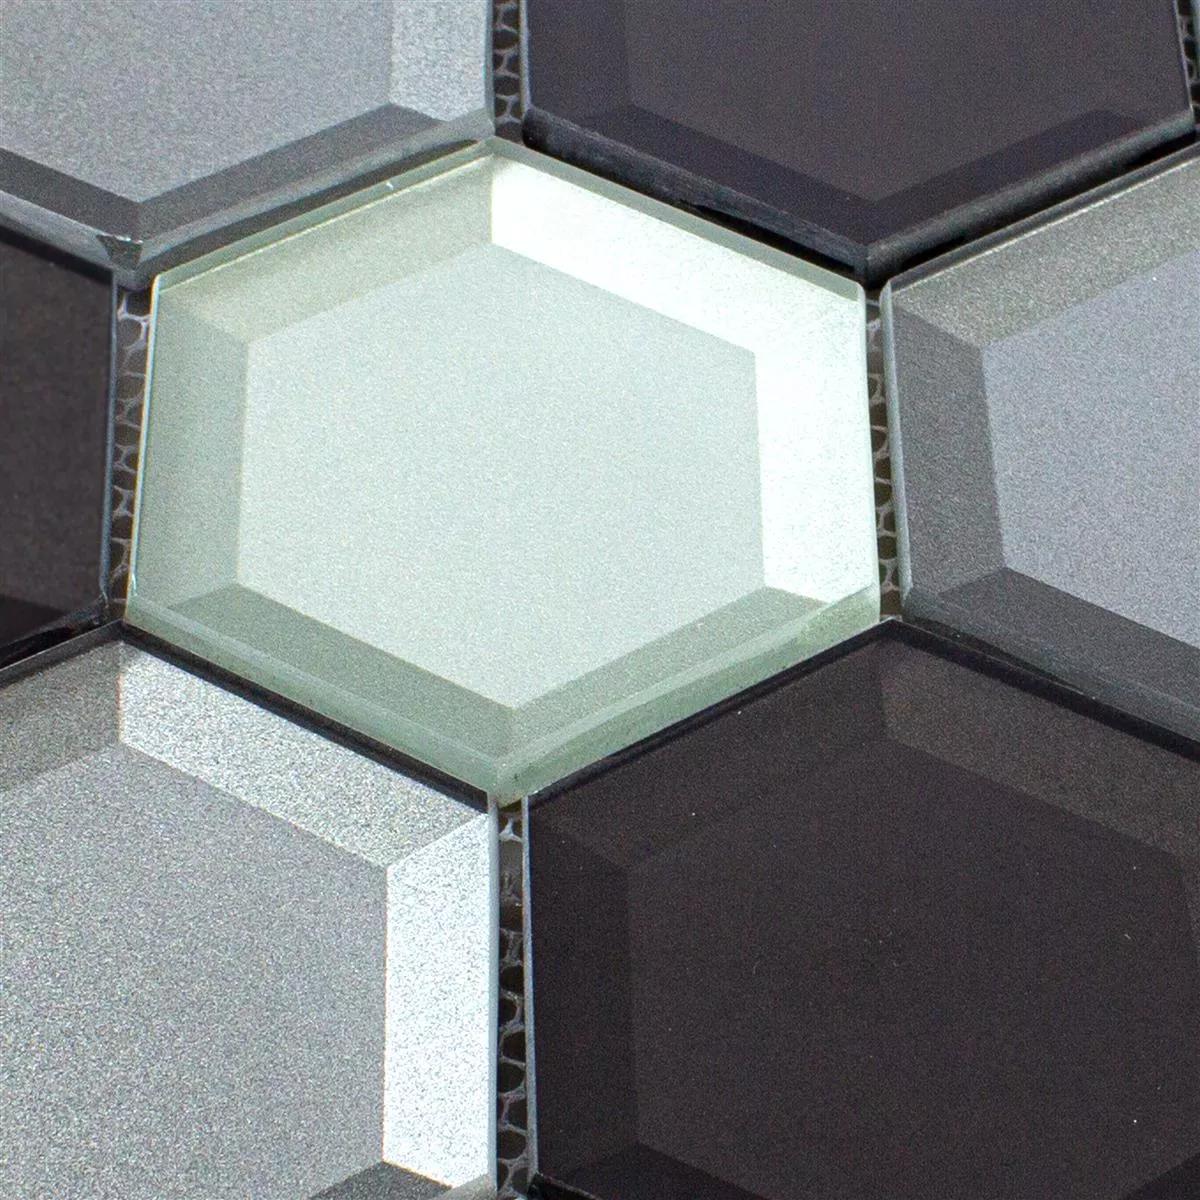 Glasmosaik Melfort Hexagon Braun Silber Türkis